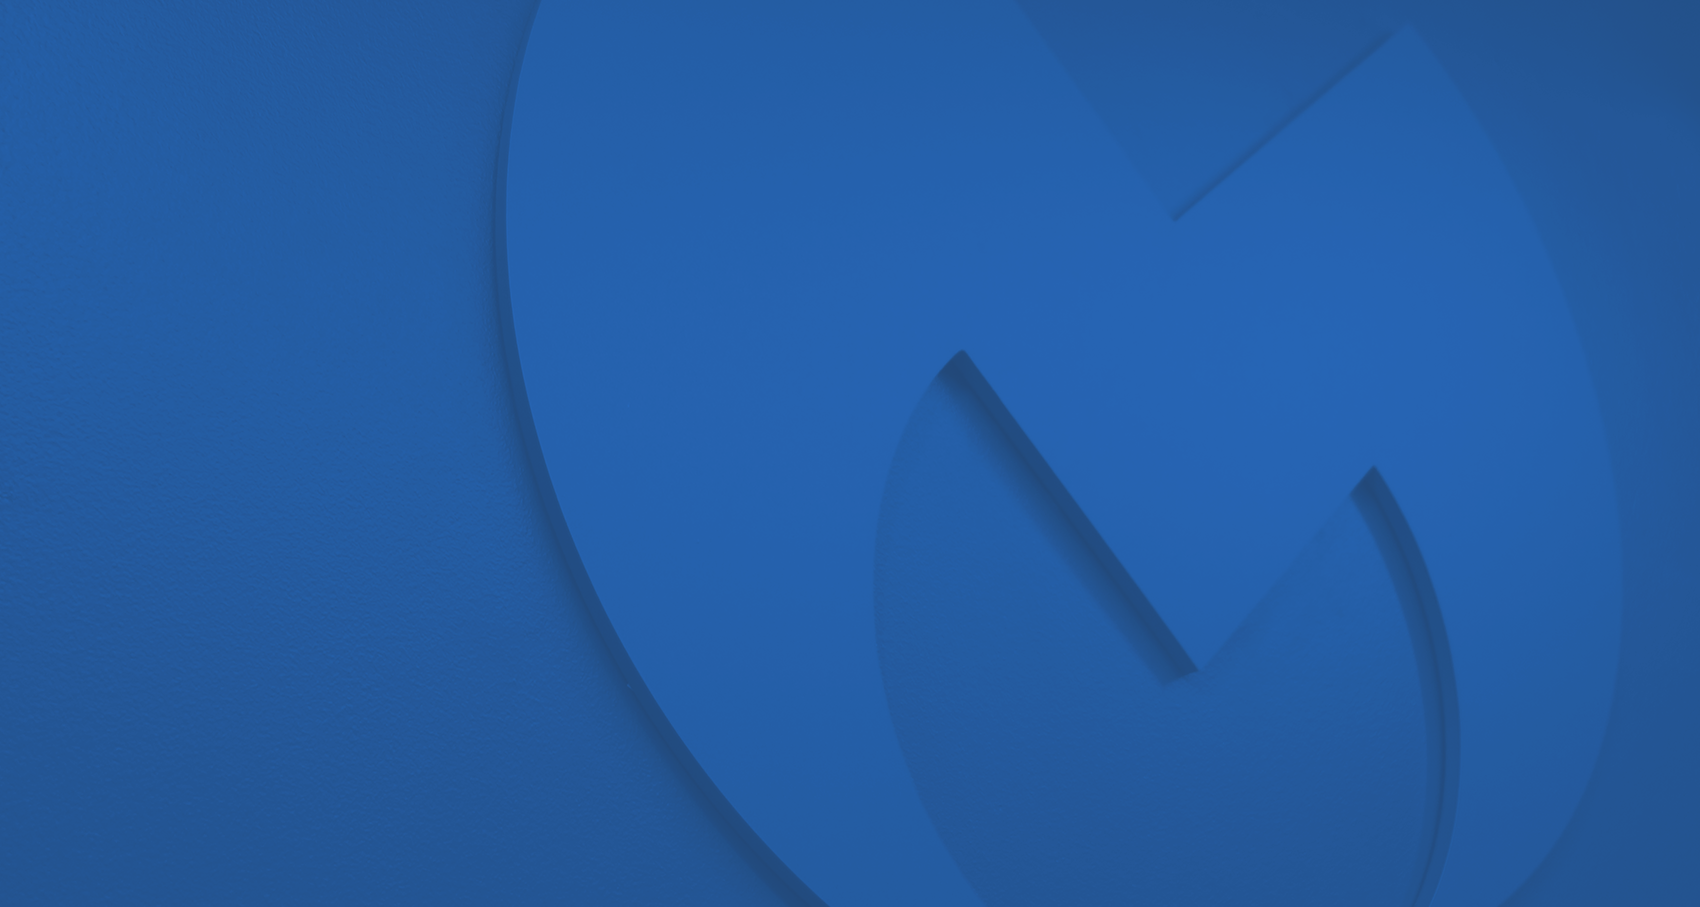 Blue Malwarebytes logo on light blue background